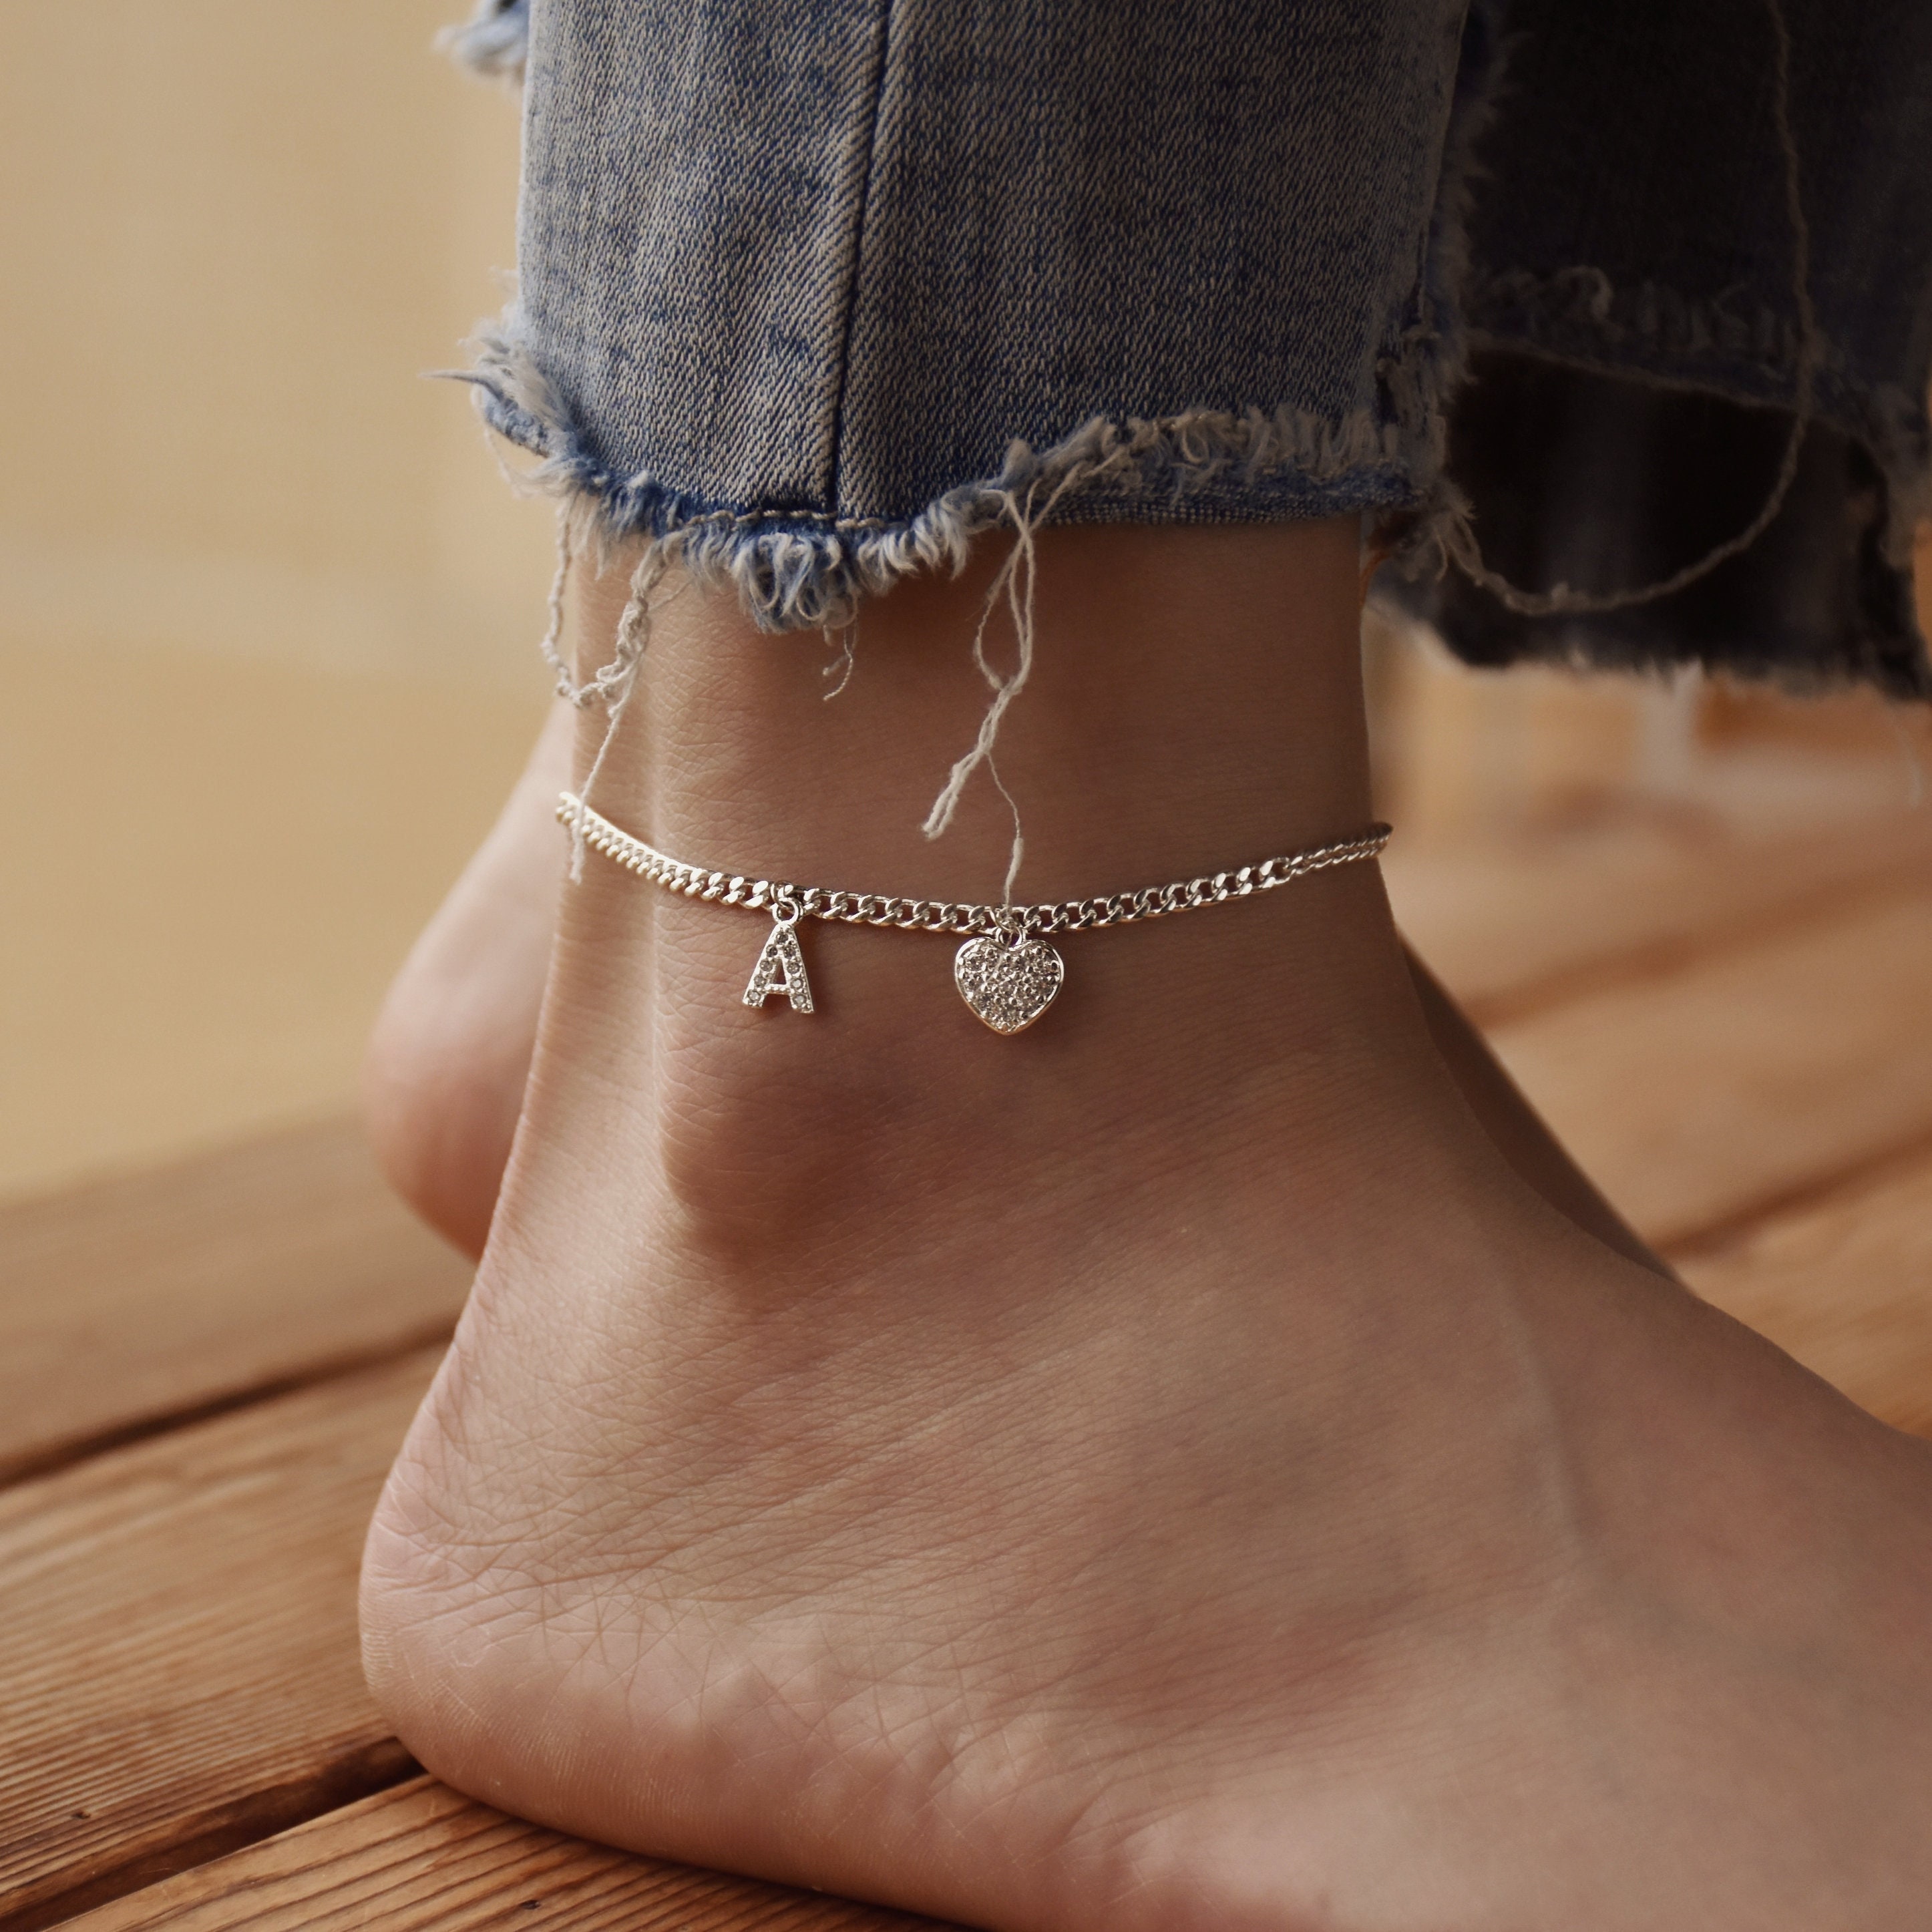  DYLIJU Anklet Anklets for Women Chain Letter Anklet